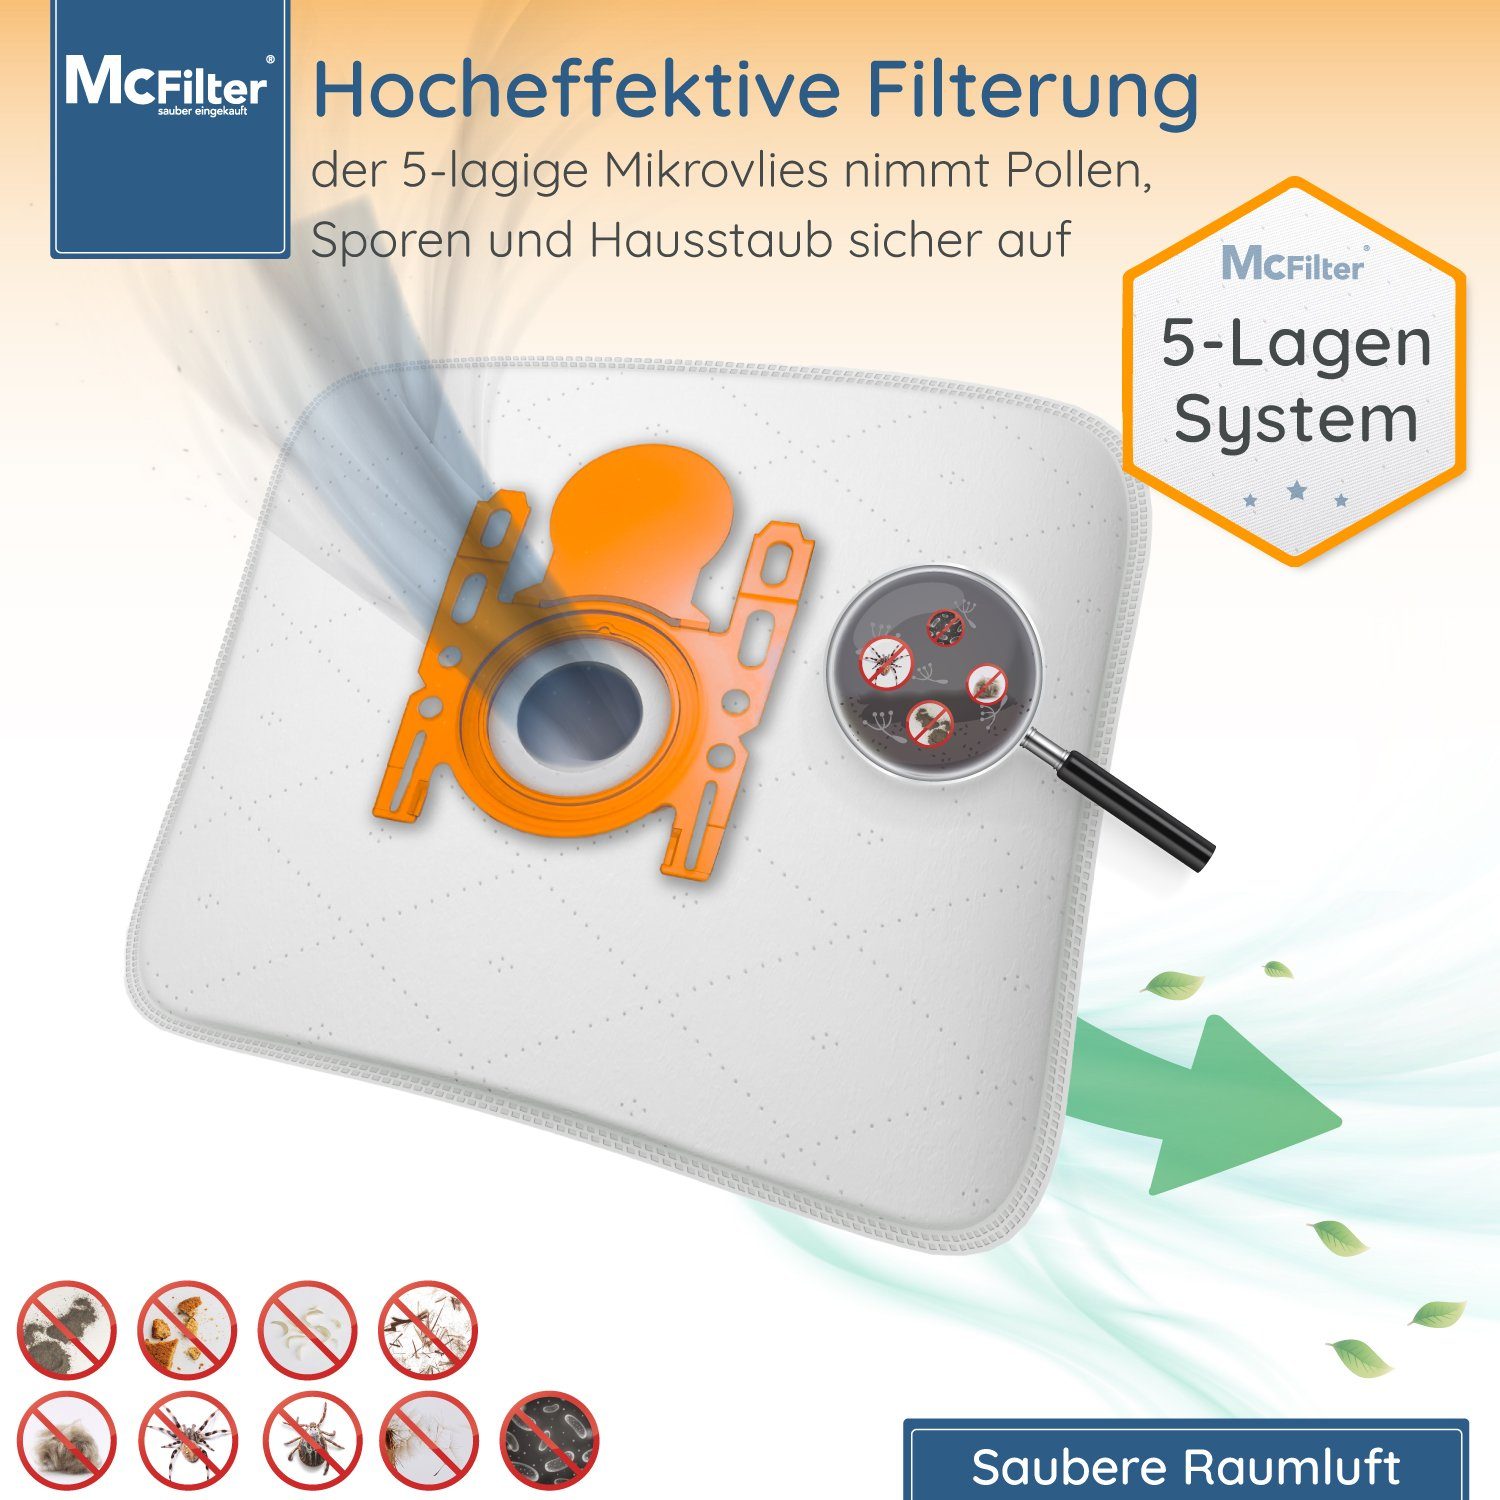 McFilter Staubsaugerbeutel, passend für Staubsauger, St., Hygieneverschluss, Siemens mit Filter VSZ3XTRM11 inkl. 30 Staubbeutel 5-lagiger